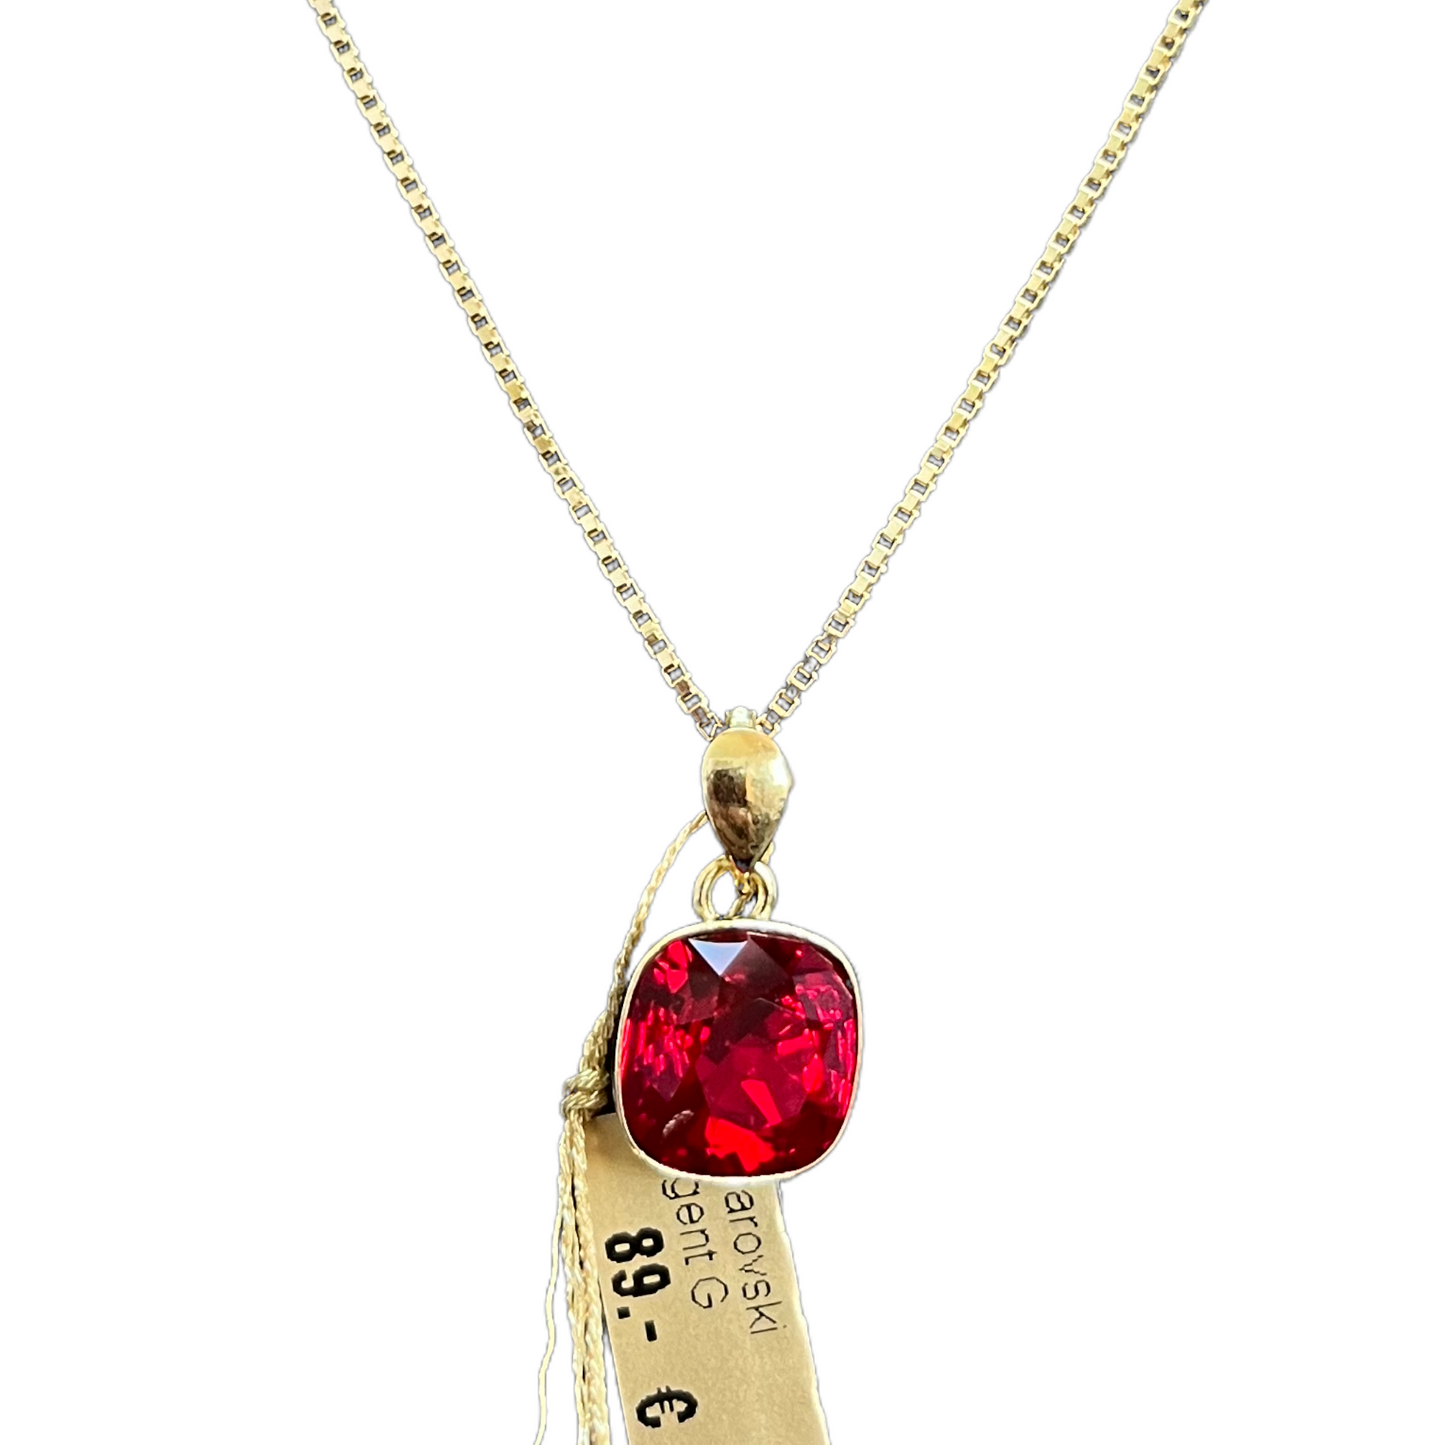 Collier avec cristaux Swarovski, collection KIM, rouge siam, argent doré